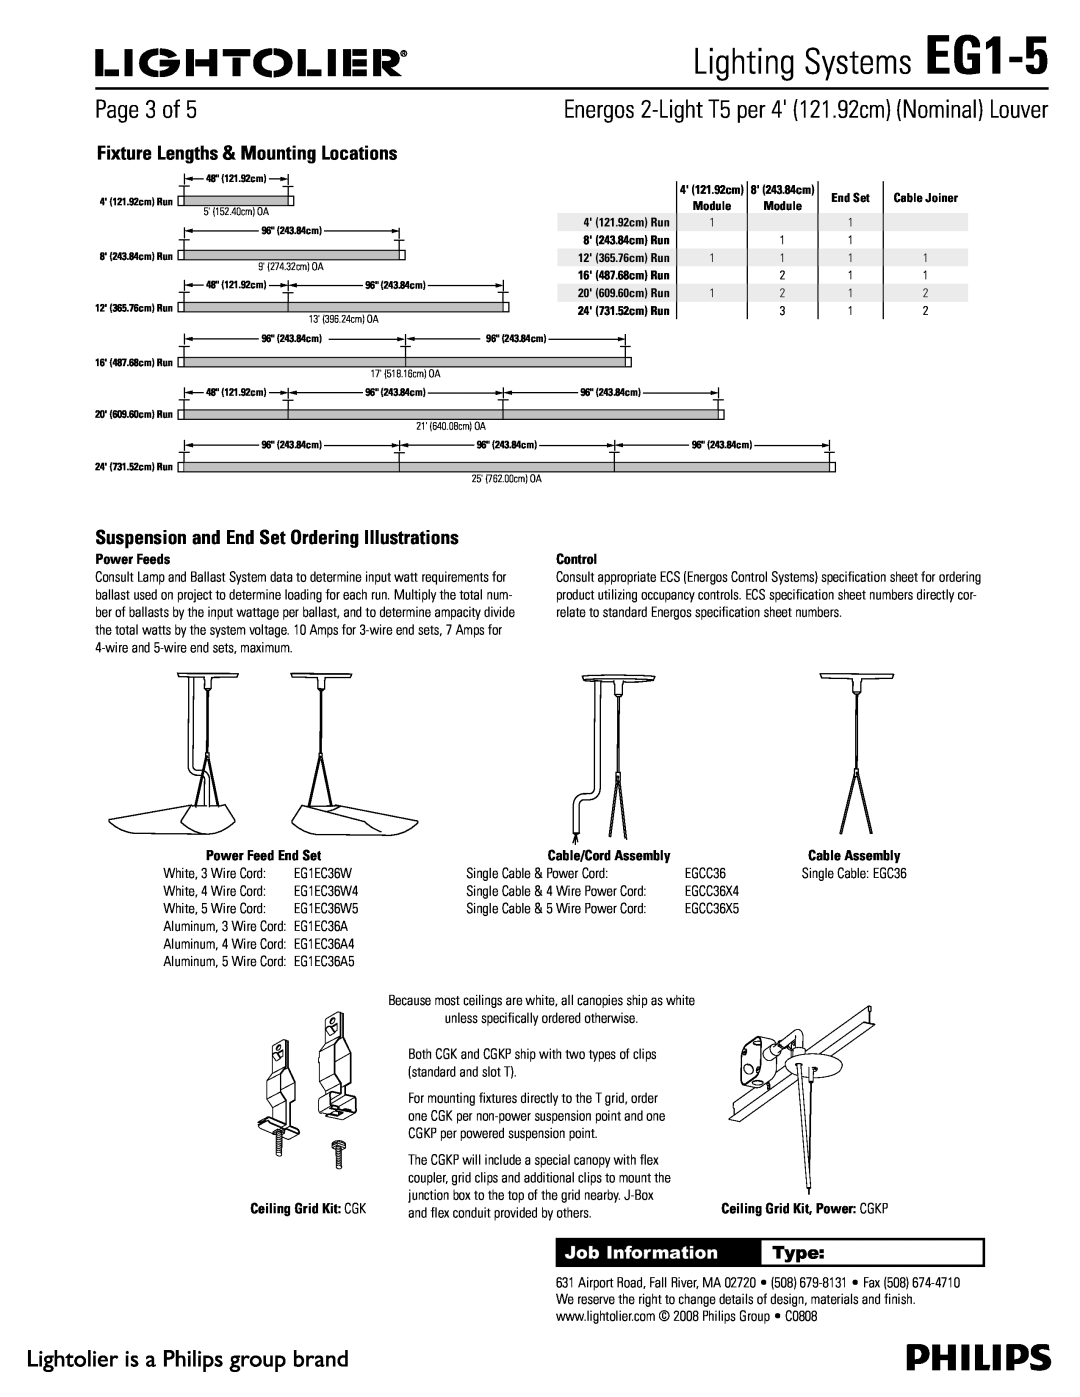 Lightolier Lighting Systems EG1-5, 1BHFPG, Job Information, Type, Ceiling Grid Kit $, 4 121.92cm Run, End Set 